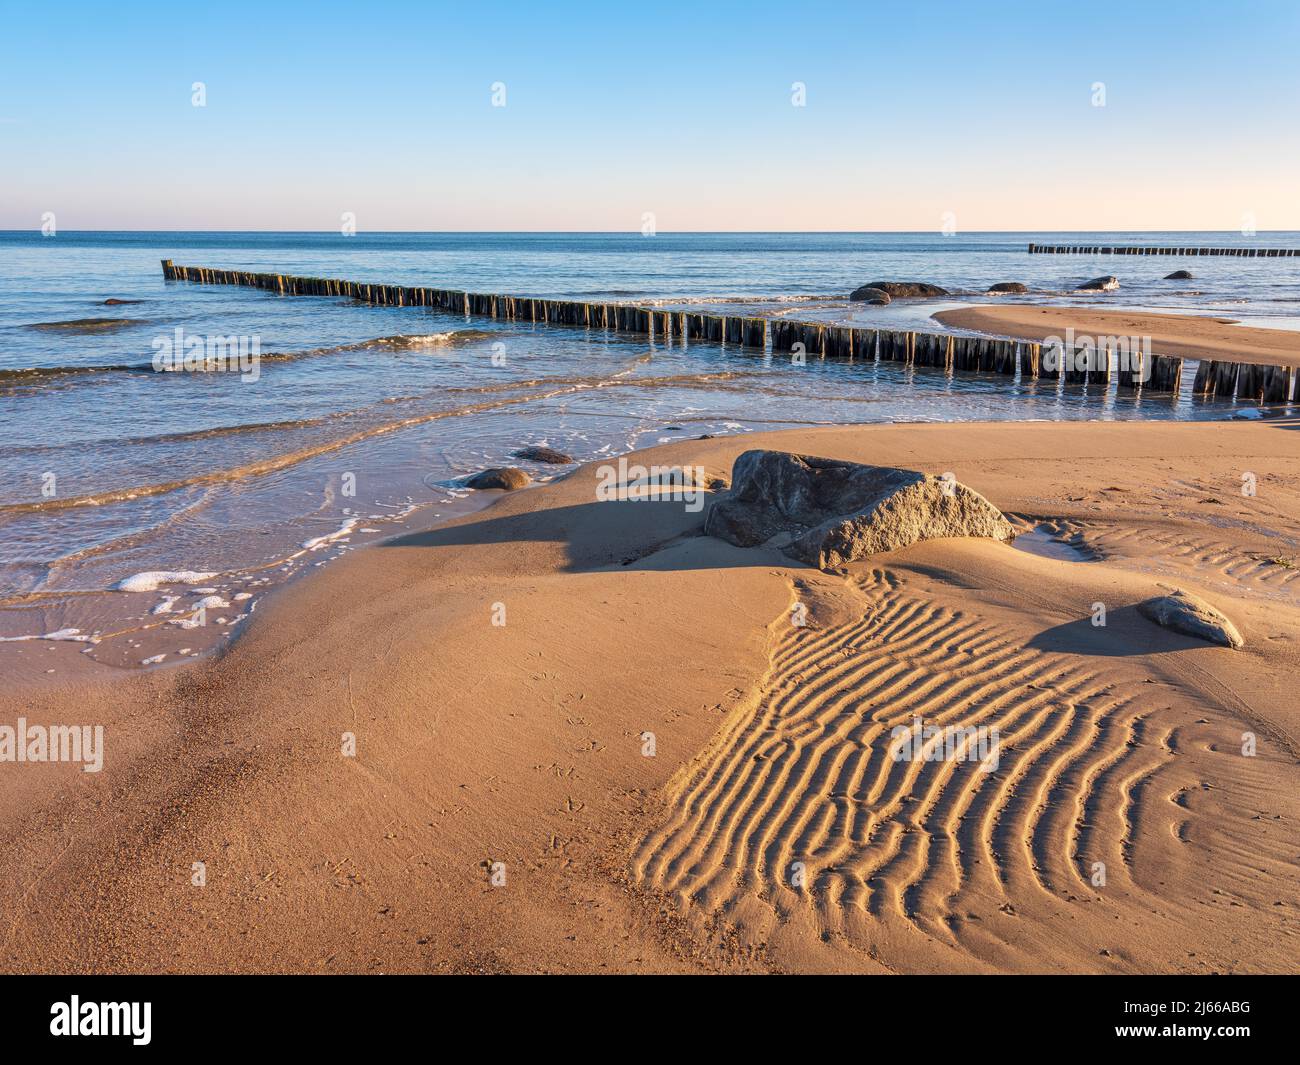 Unberuehrter Strand an der Ostsee mit Buhnen und Sandrippeln, Ostseebad Kuehlungsborn, Mecklenburg-Vorpommern, Deutschland Foto Stock